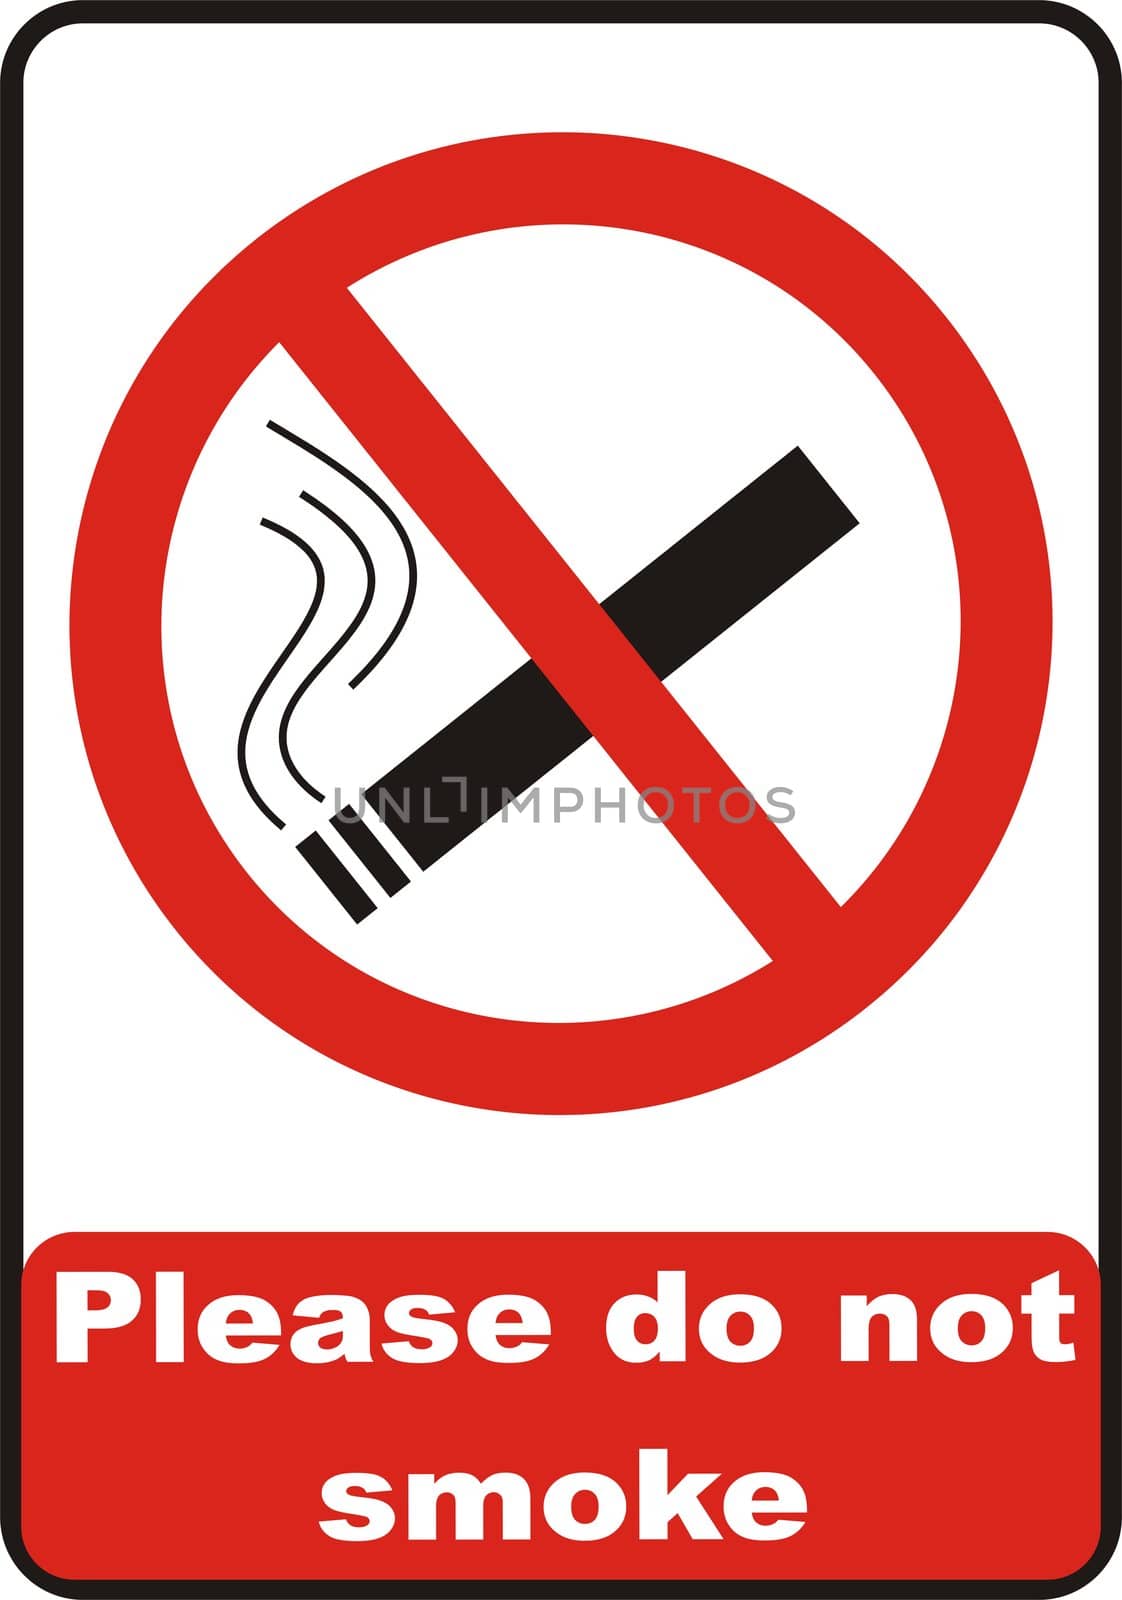 No smoking symbol isolated on white background